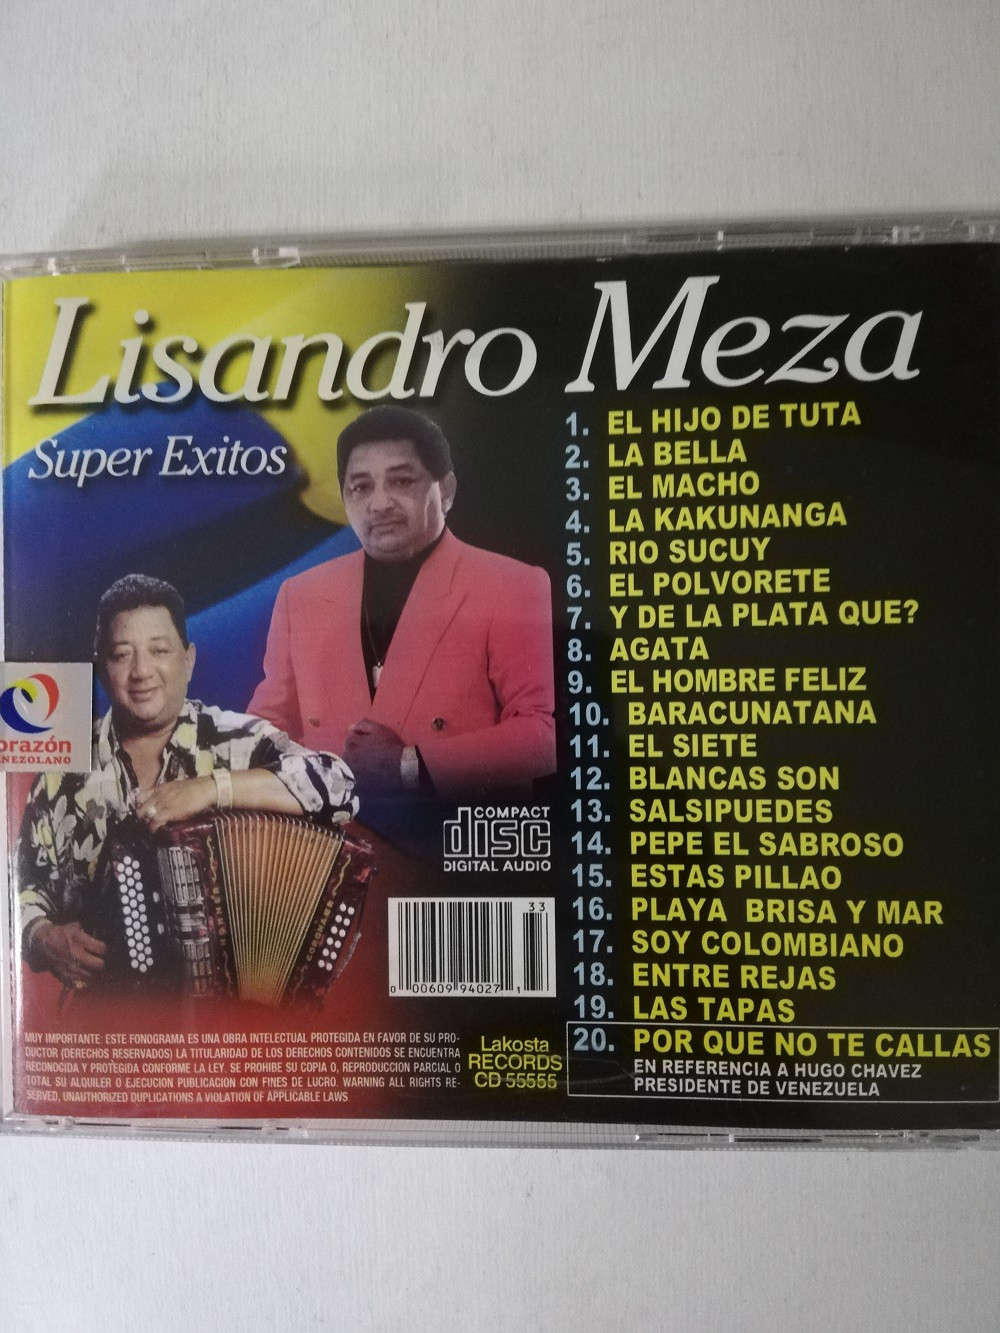 Imagen CD LISANDRO MEZA - SUPER EXITOS 2